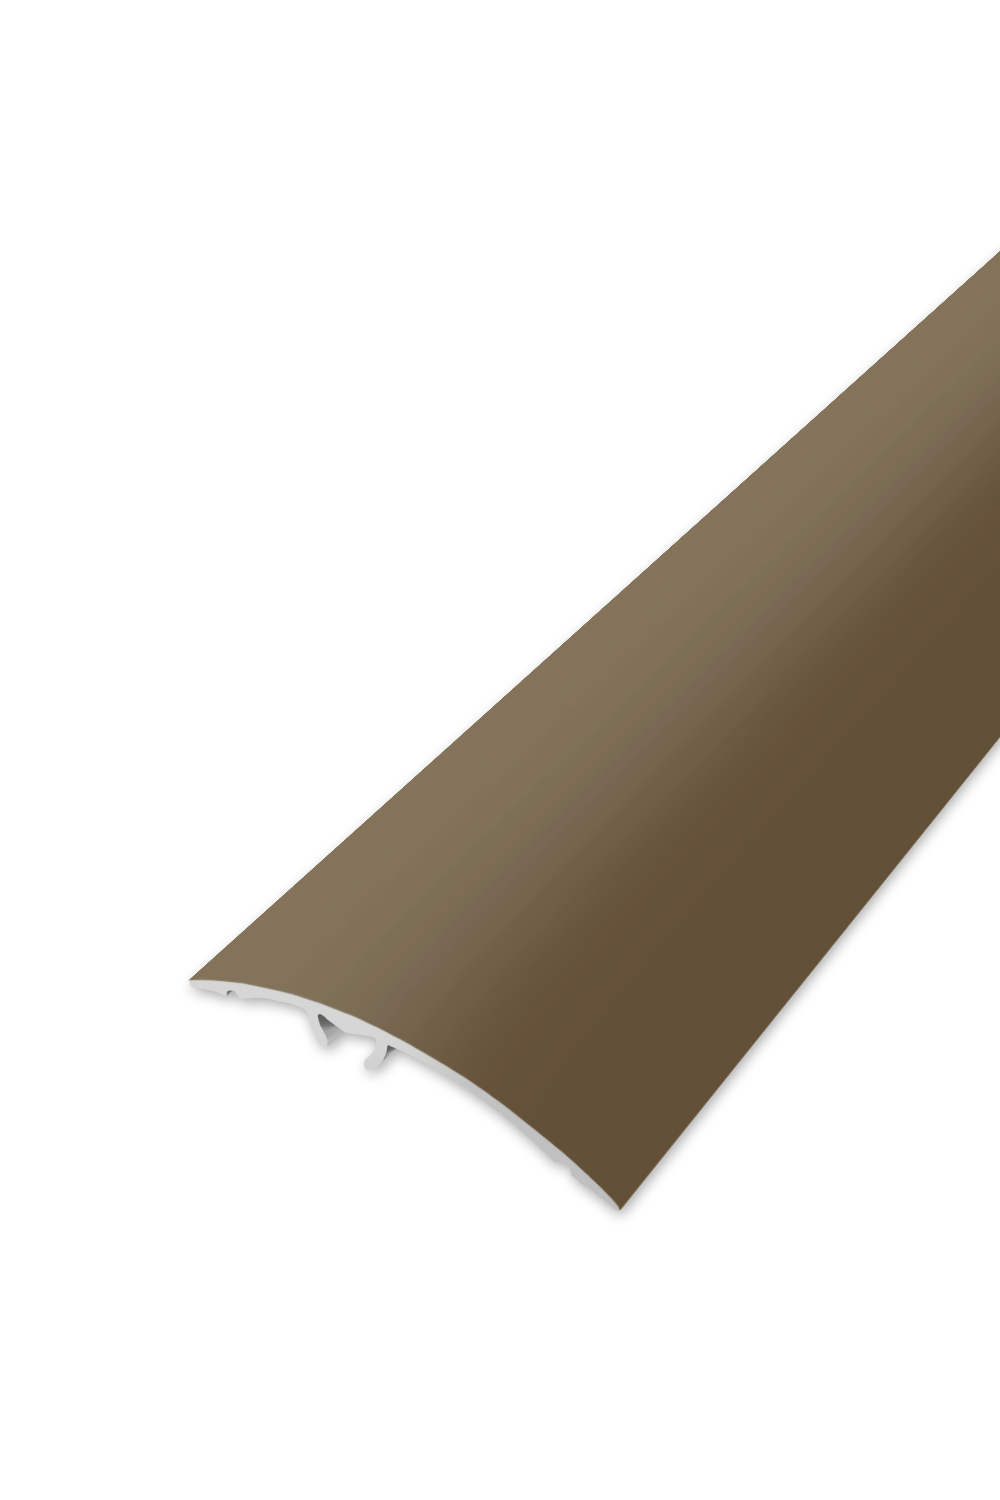 Přechodová lišta WELL 50 - Bronz 90 cm